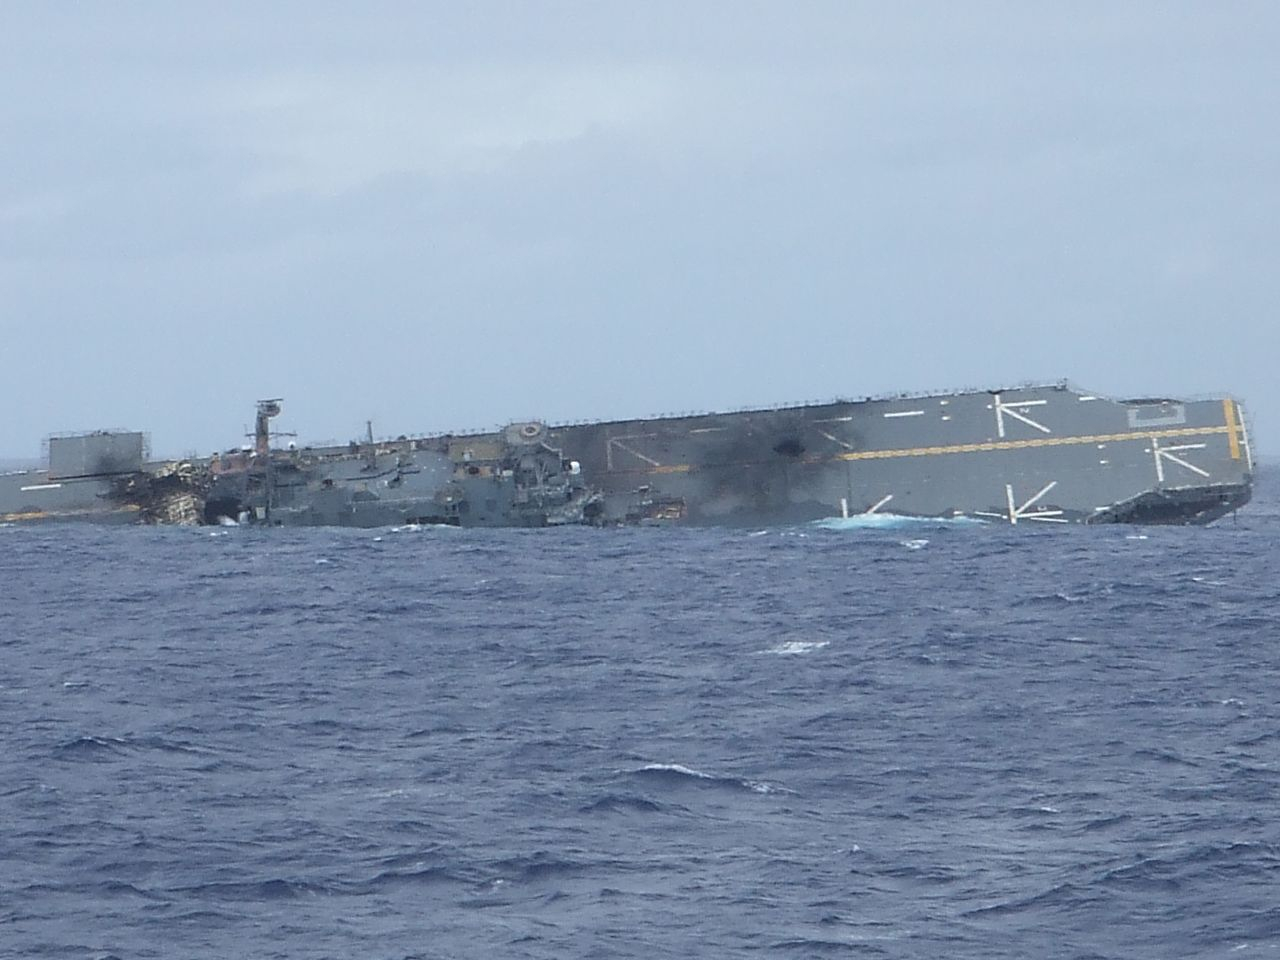 USS_Belleau_Wood_(LHA-3)_sinking.jpg